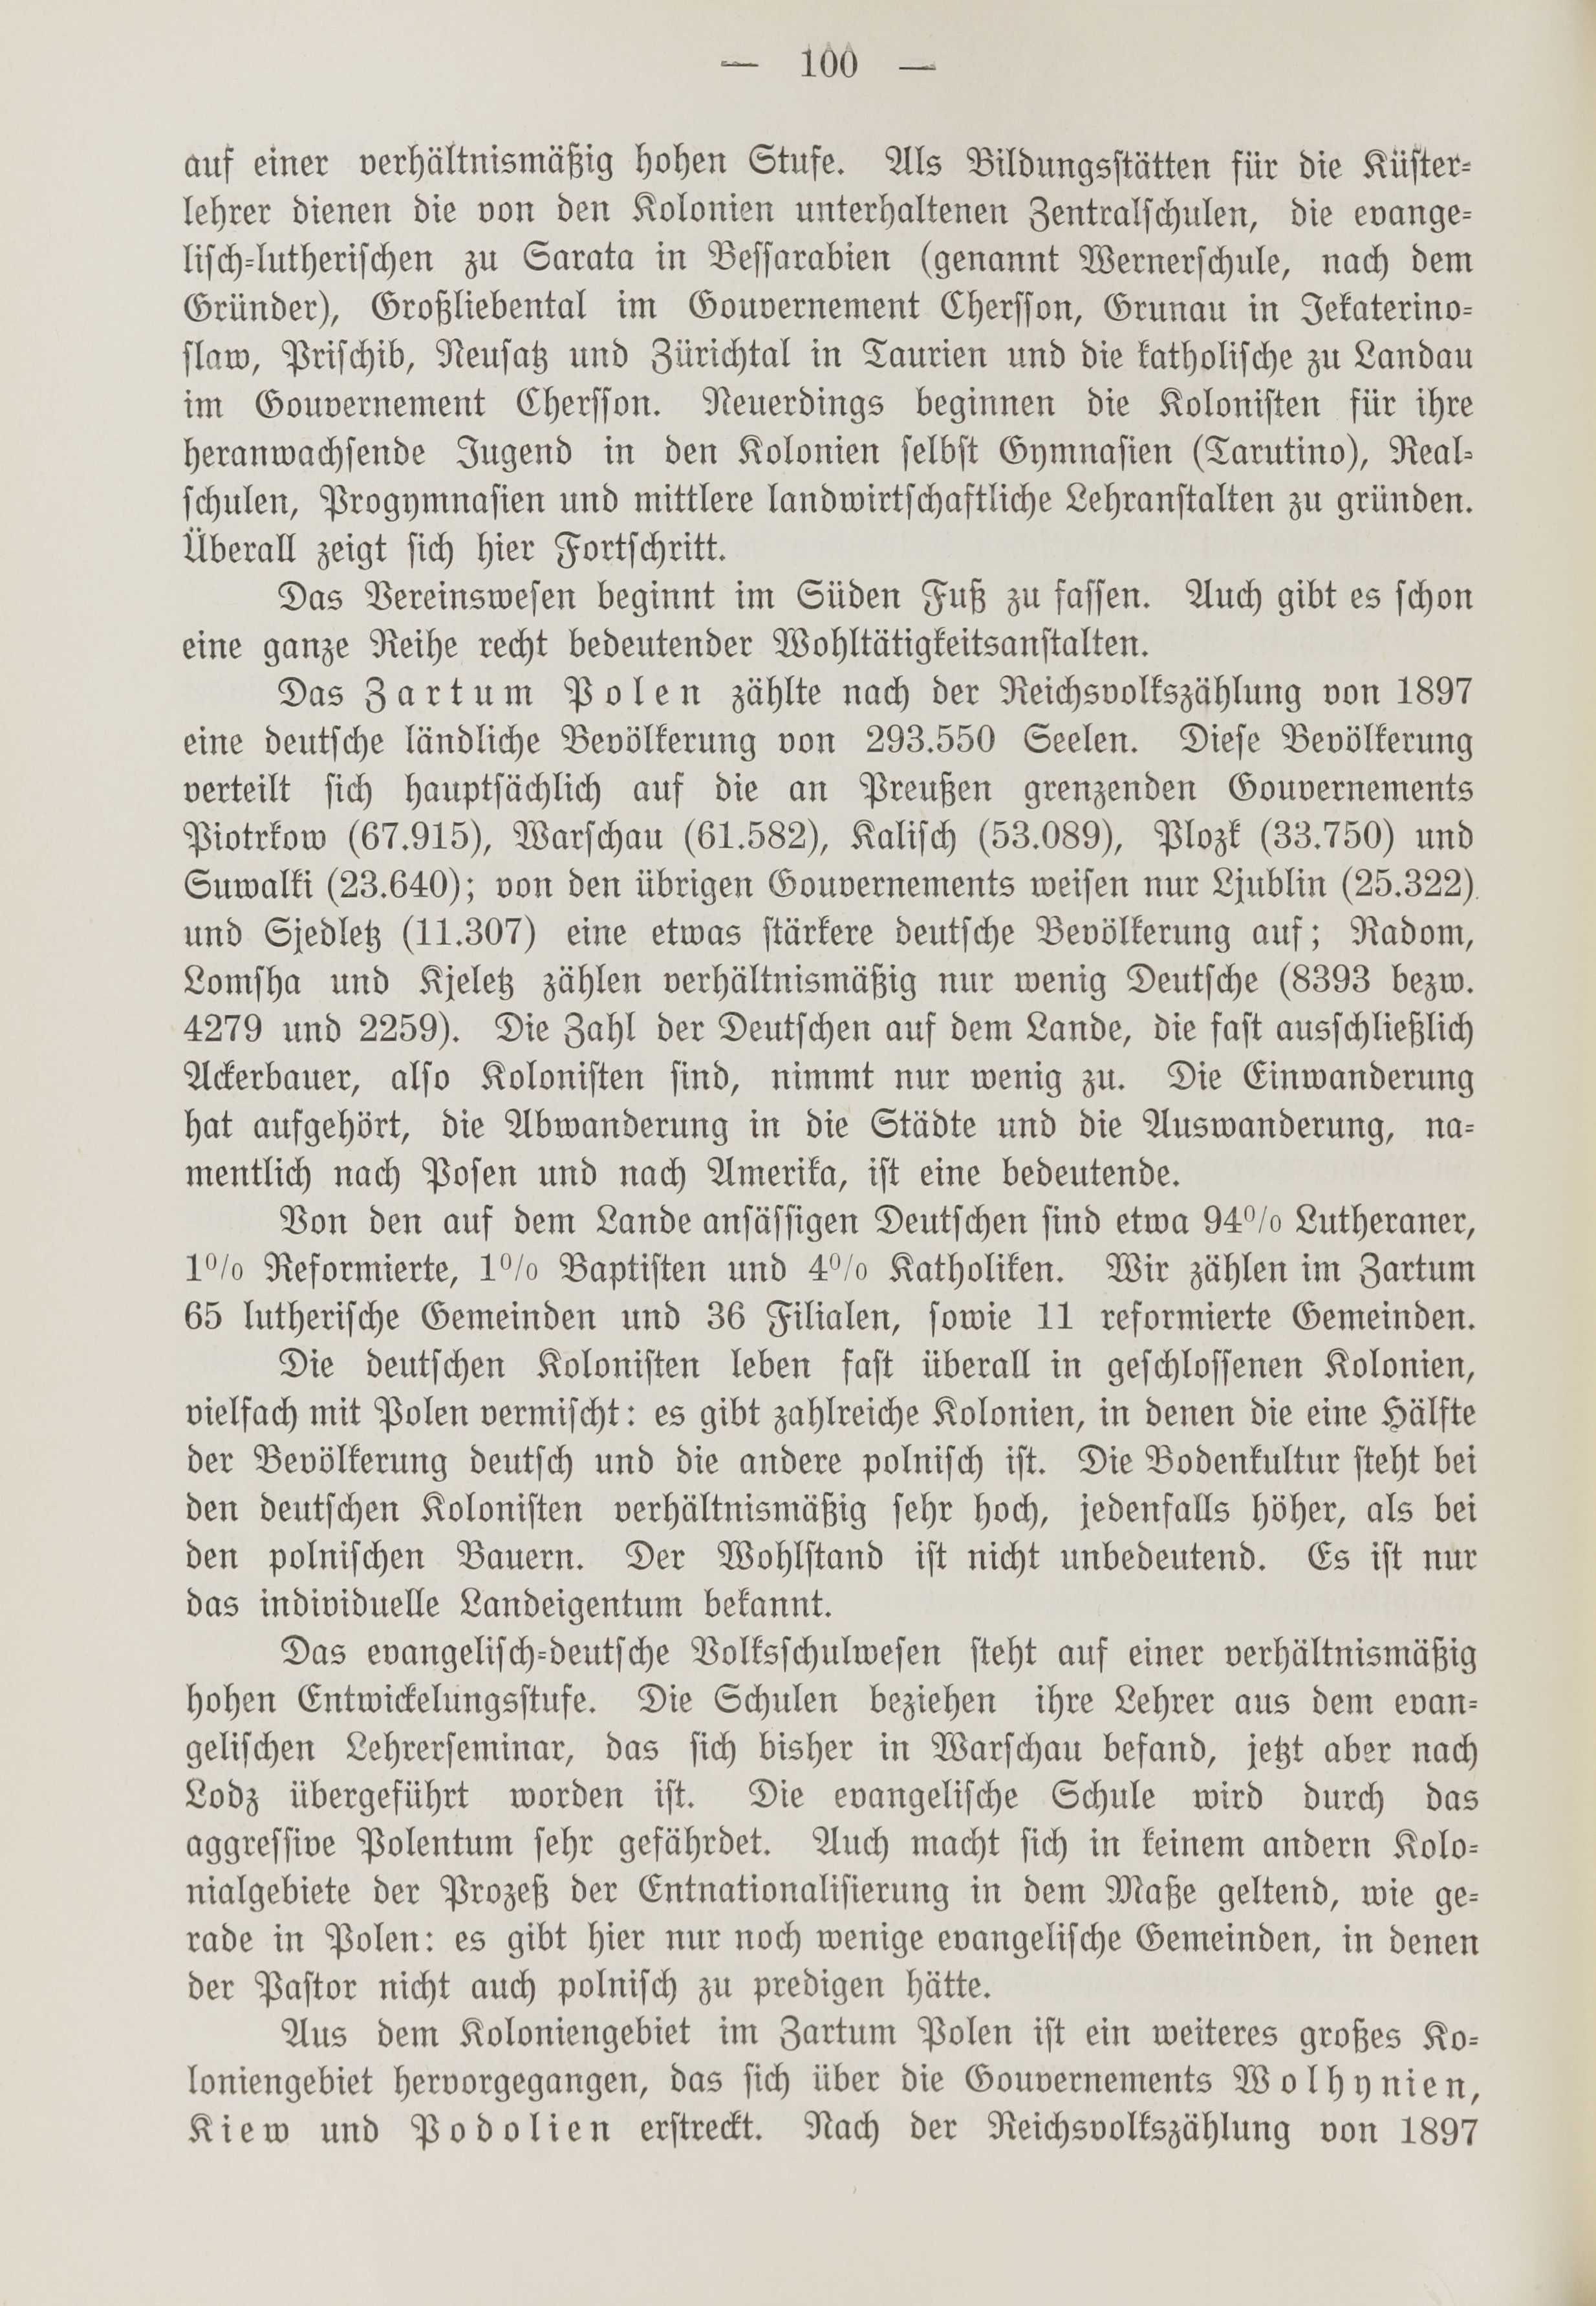 Deutsche Monatsschrift für Russland [1] (1912) | 108. (100) Haupttext